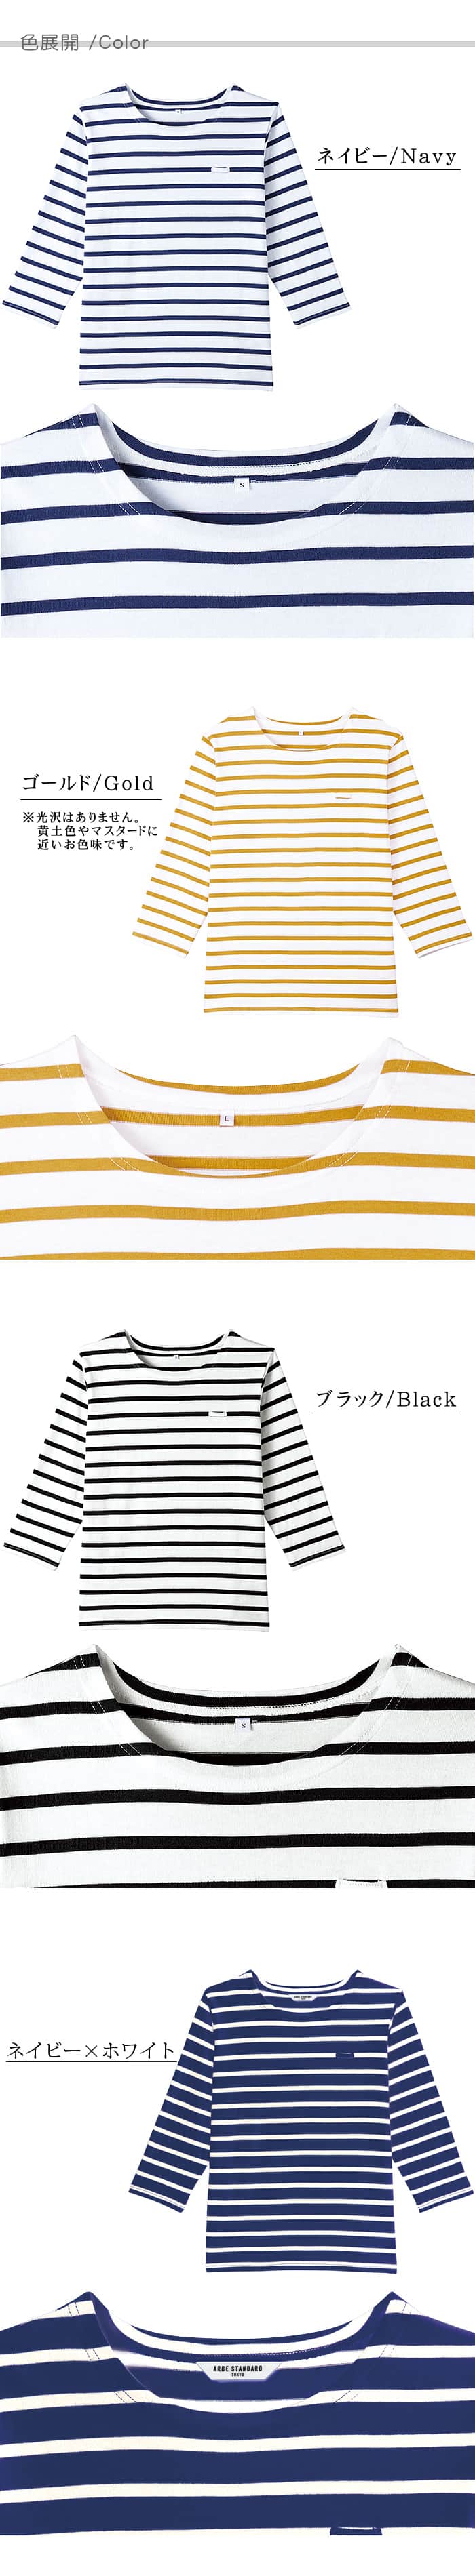 七分袖ワークボーダーシャツ 名札ループ付き綿100%Tシャツ[男女兼用](3色) 色展開説明